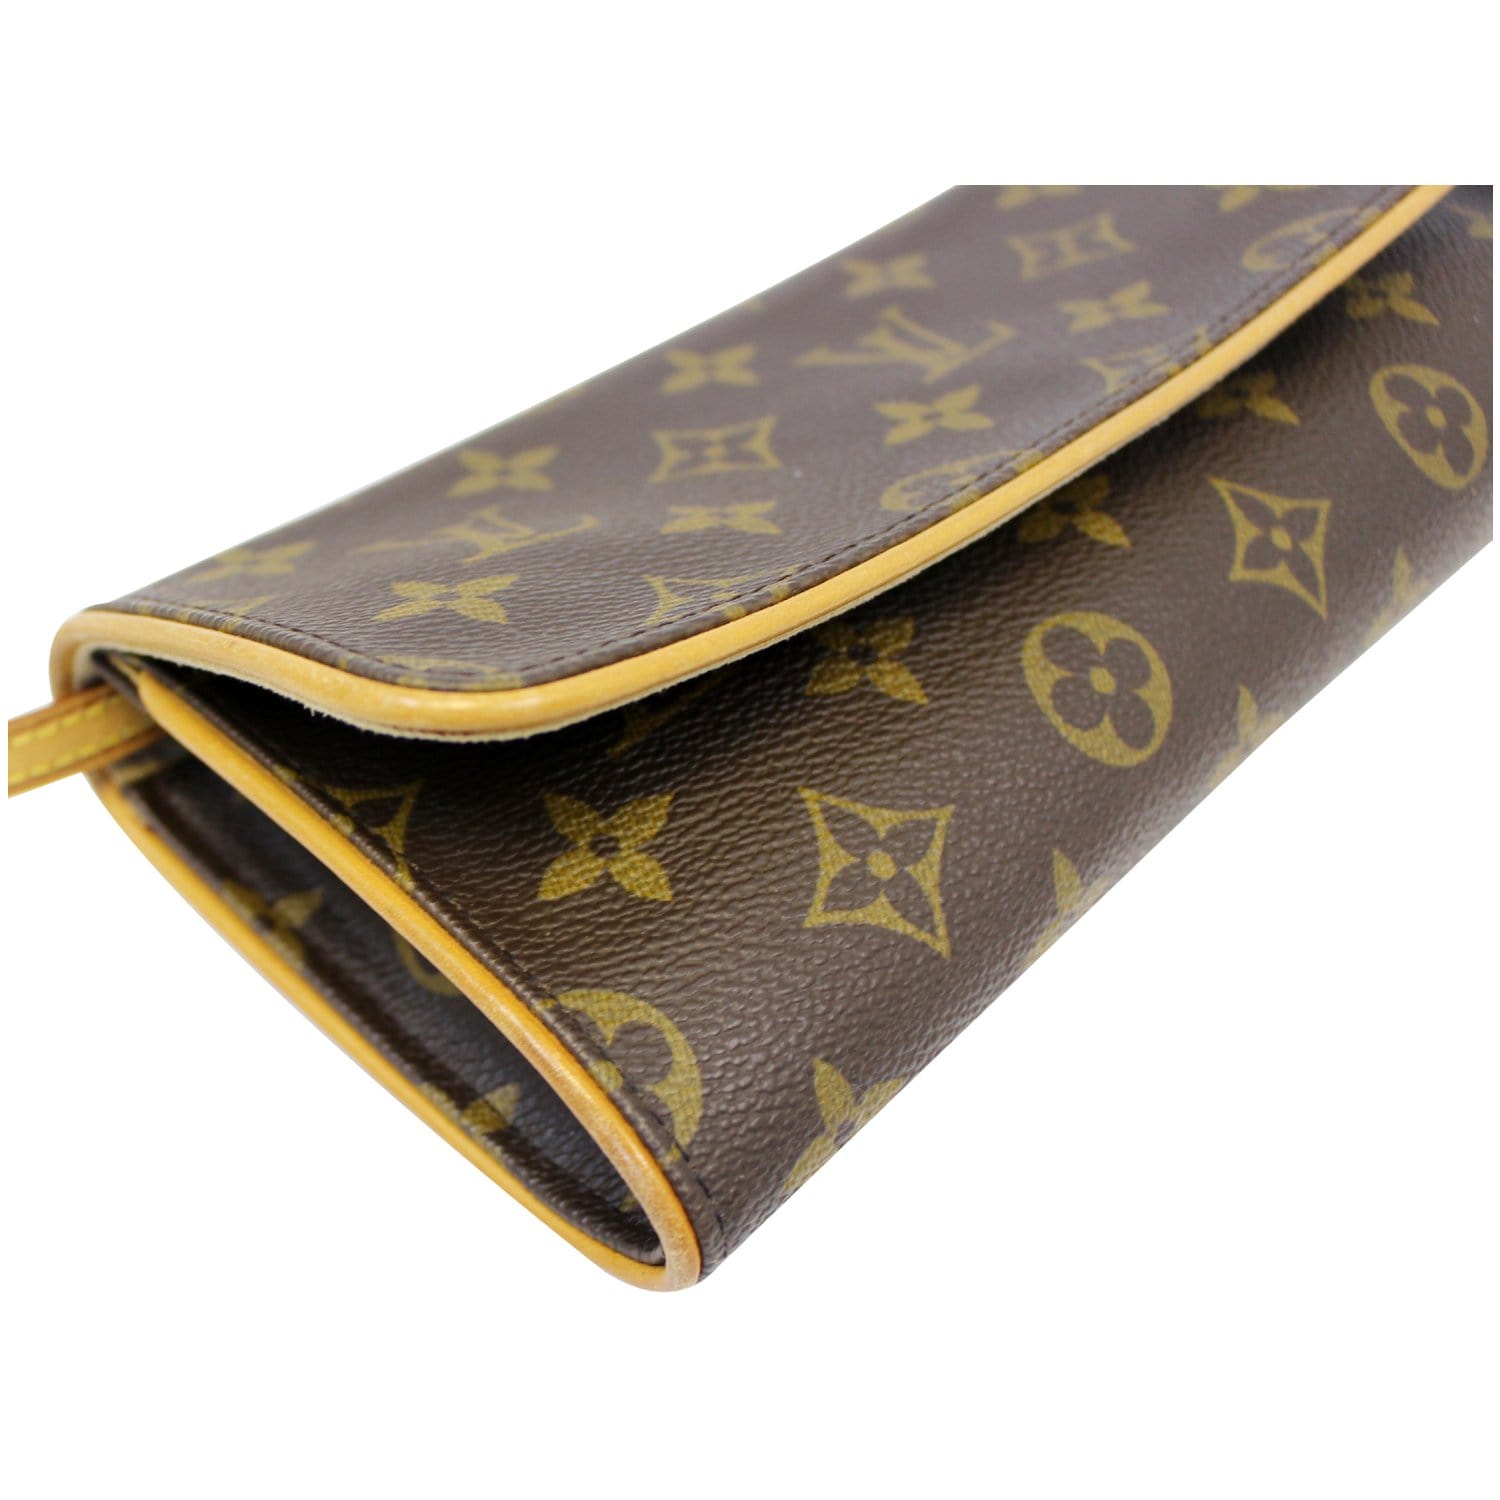 Authenticated used Louis Vuitton Shoulder Bag Pochette Twin Brown Monogram M51852 Canvas Nume FL1000 Louis Vuitton Clutch 2way Flap Women's LV, Adult